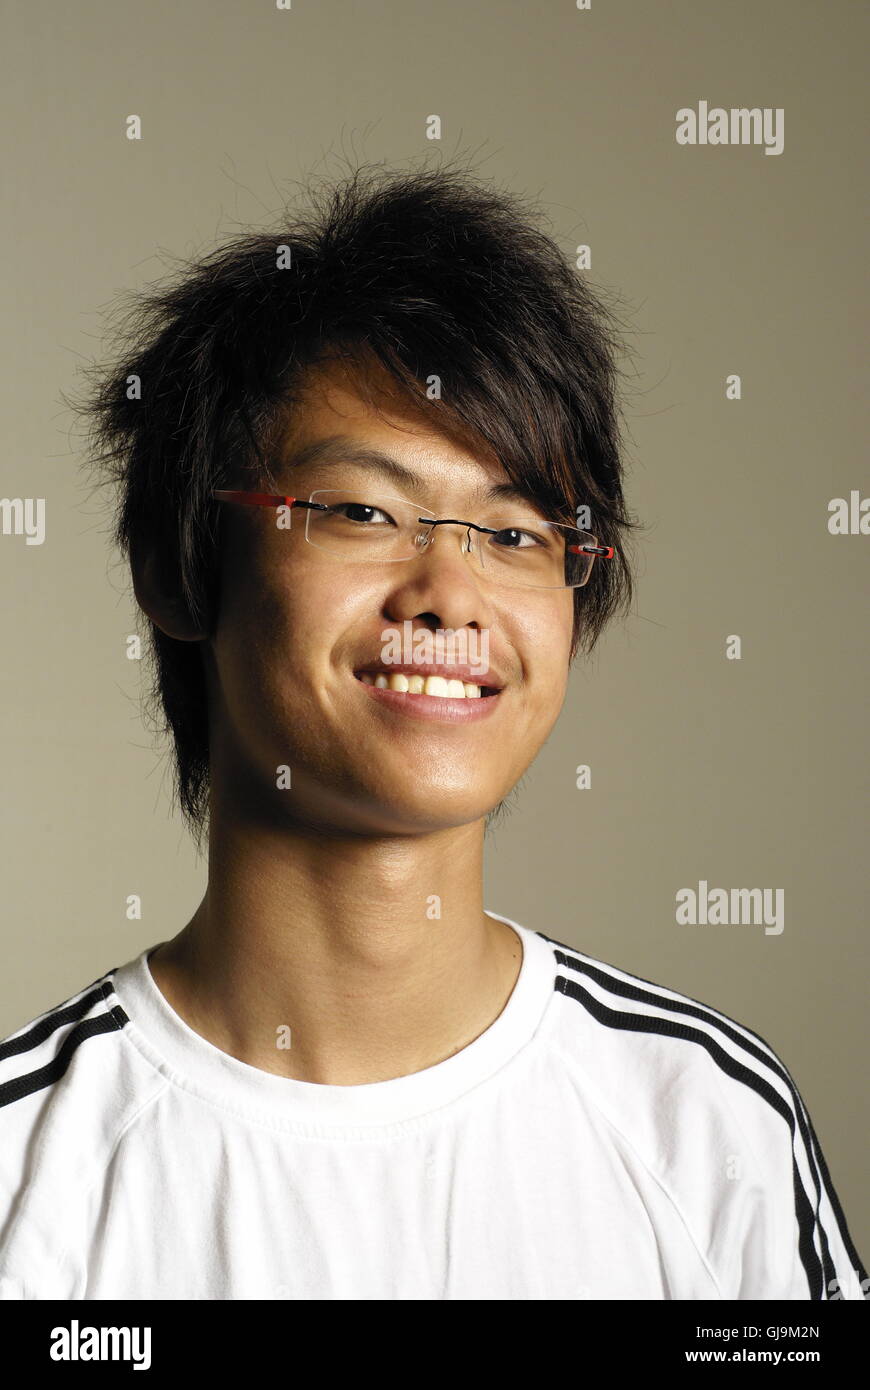 Junge asiatische Mann lächelnd Stockfoto